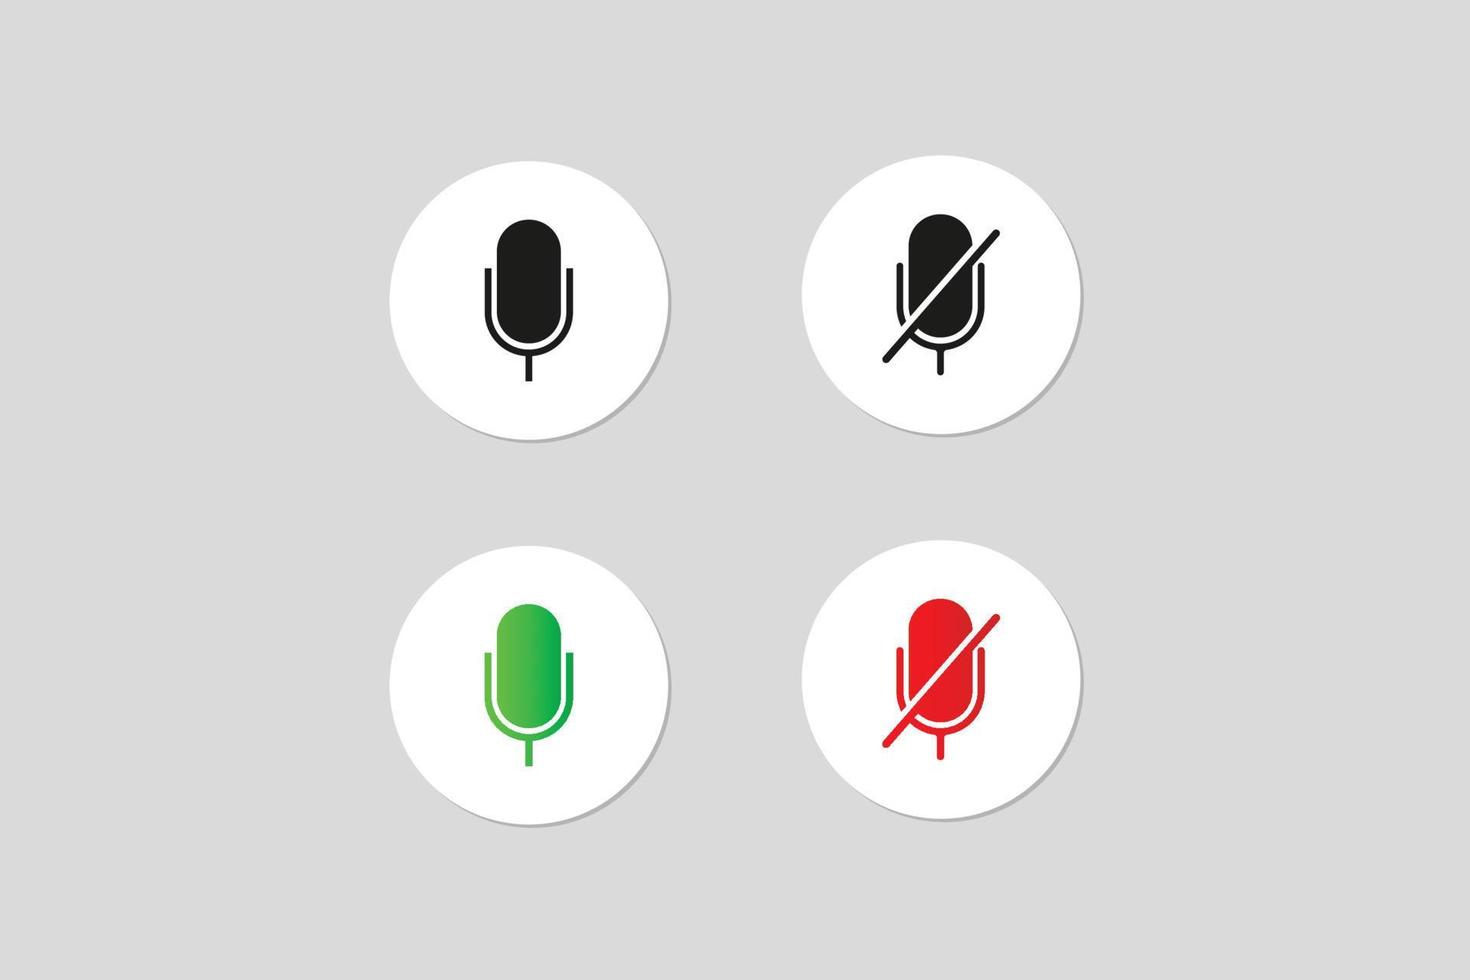 sonido del micrófono encendido y apagado botones de iconos verdes y rojos vector premium.